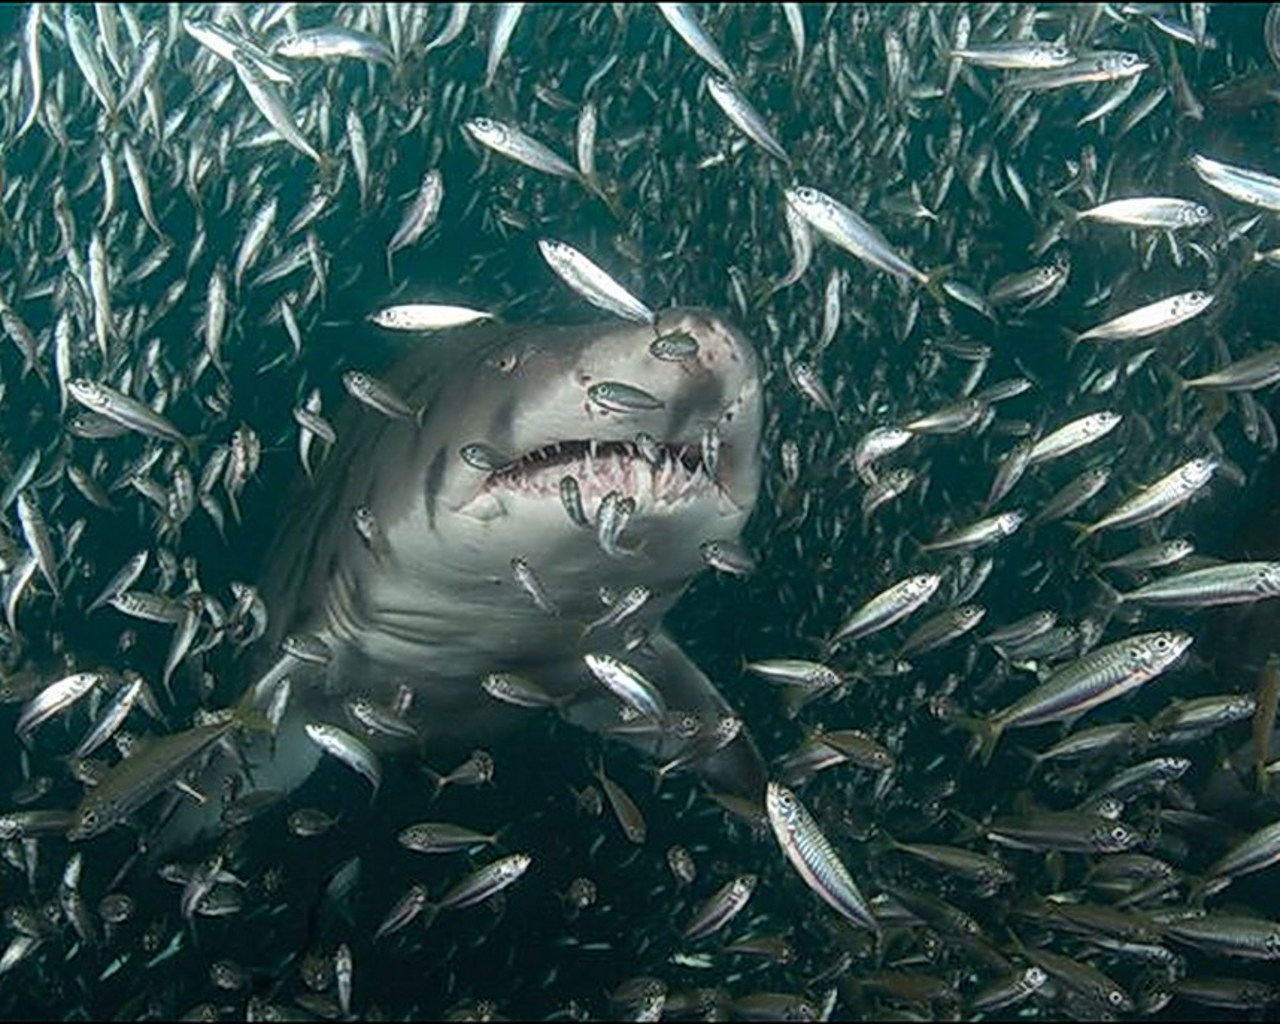 Haien på fiskerbåten | Vibeke Holtskog